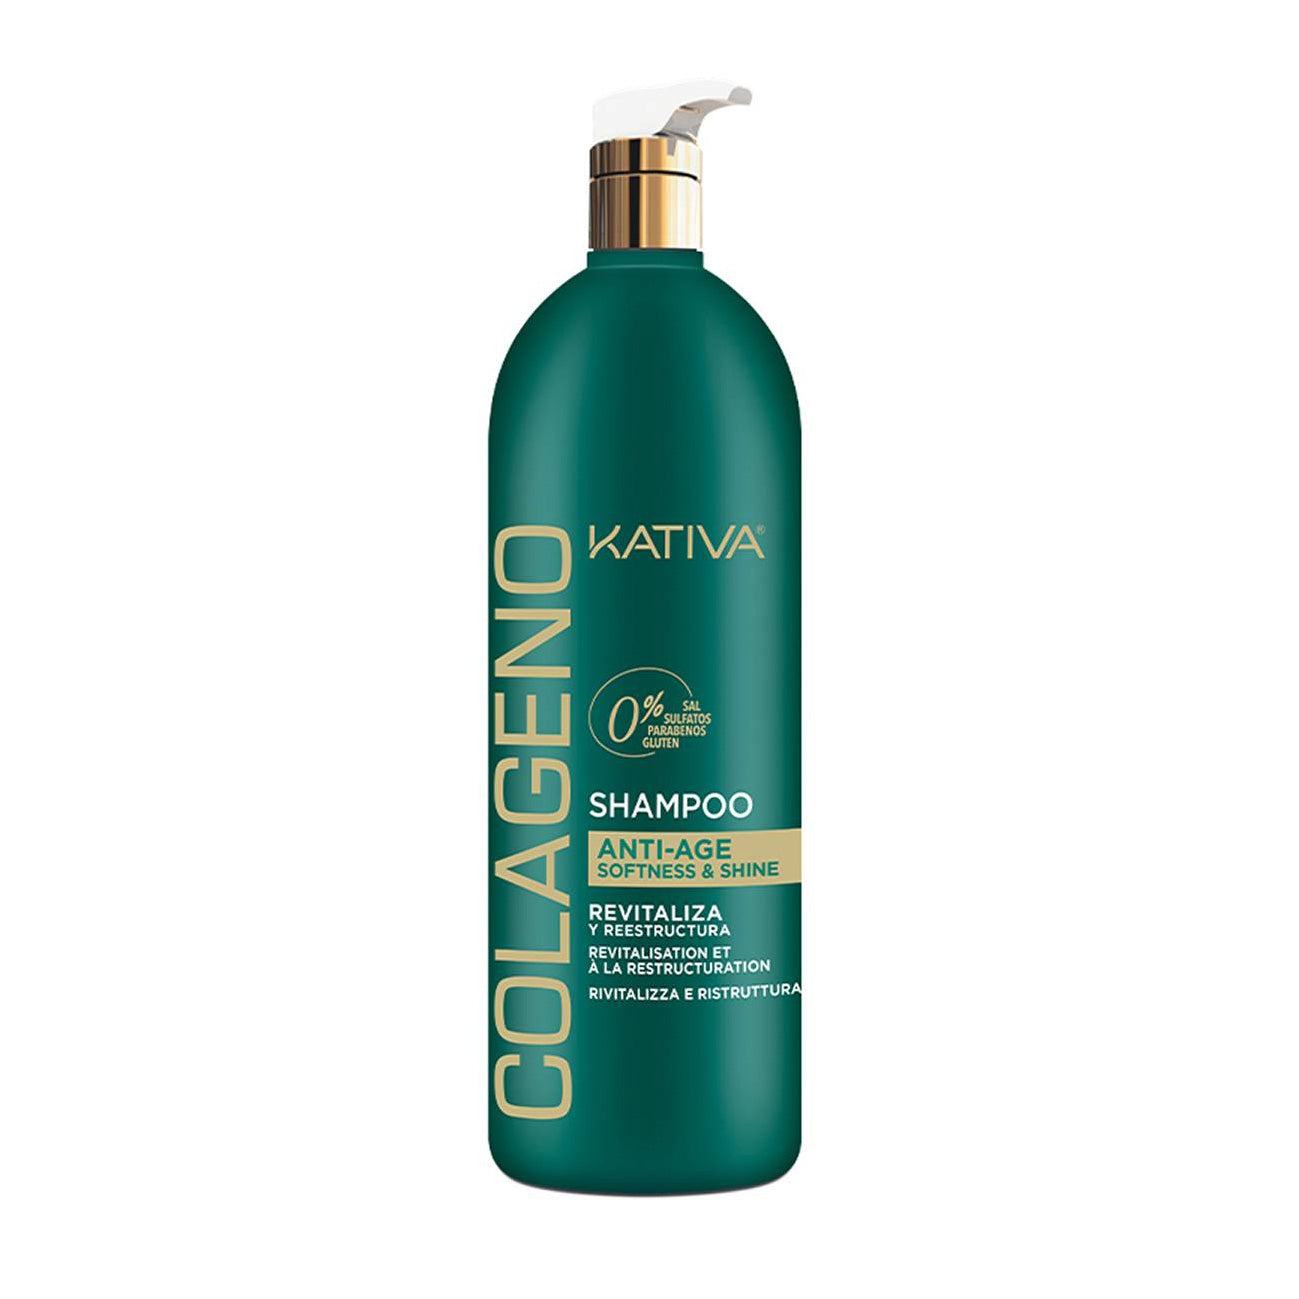 Kativa Colageno Anti-Age Shampoo for Damaged Hair - samawa perfumes 